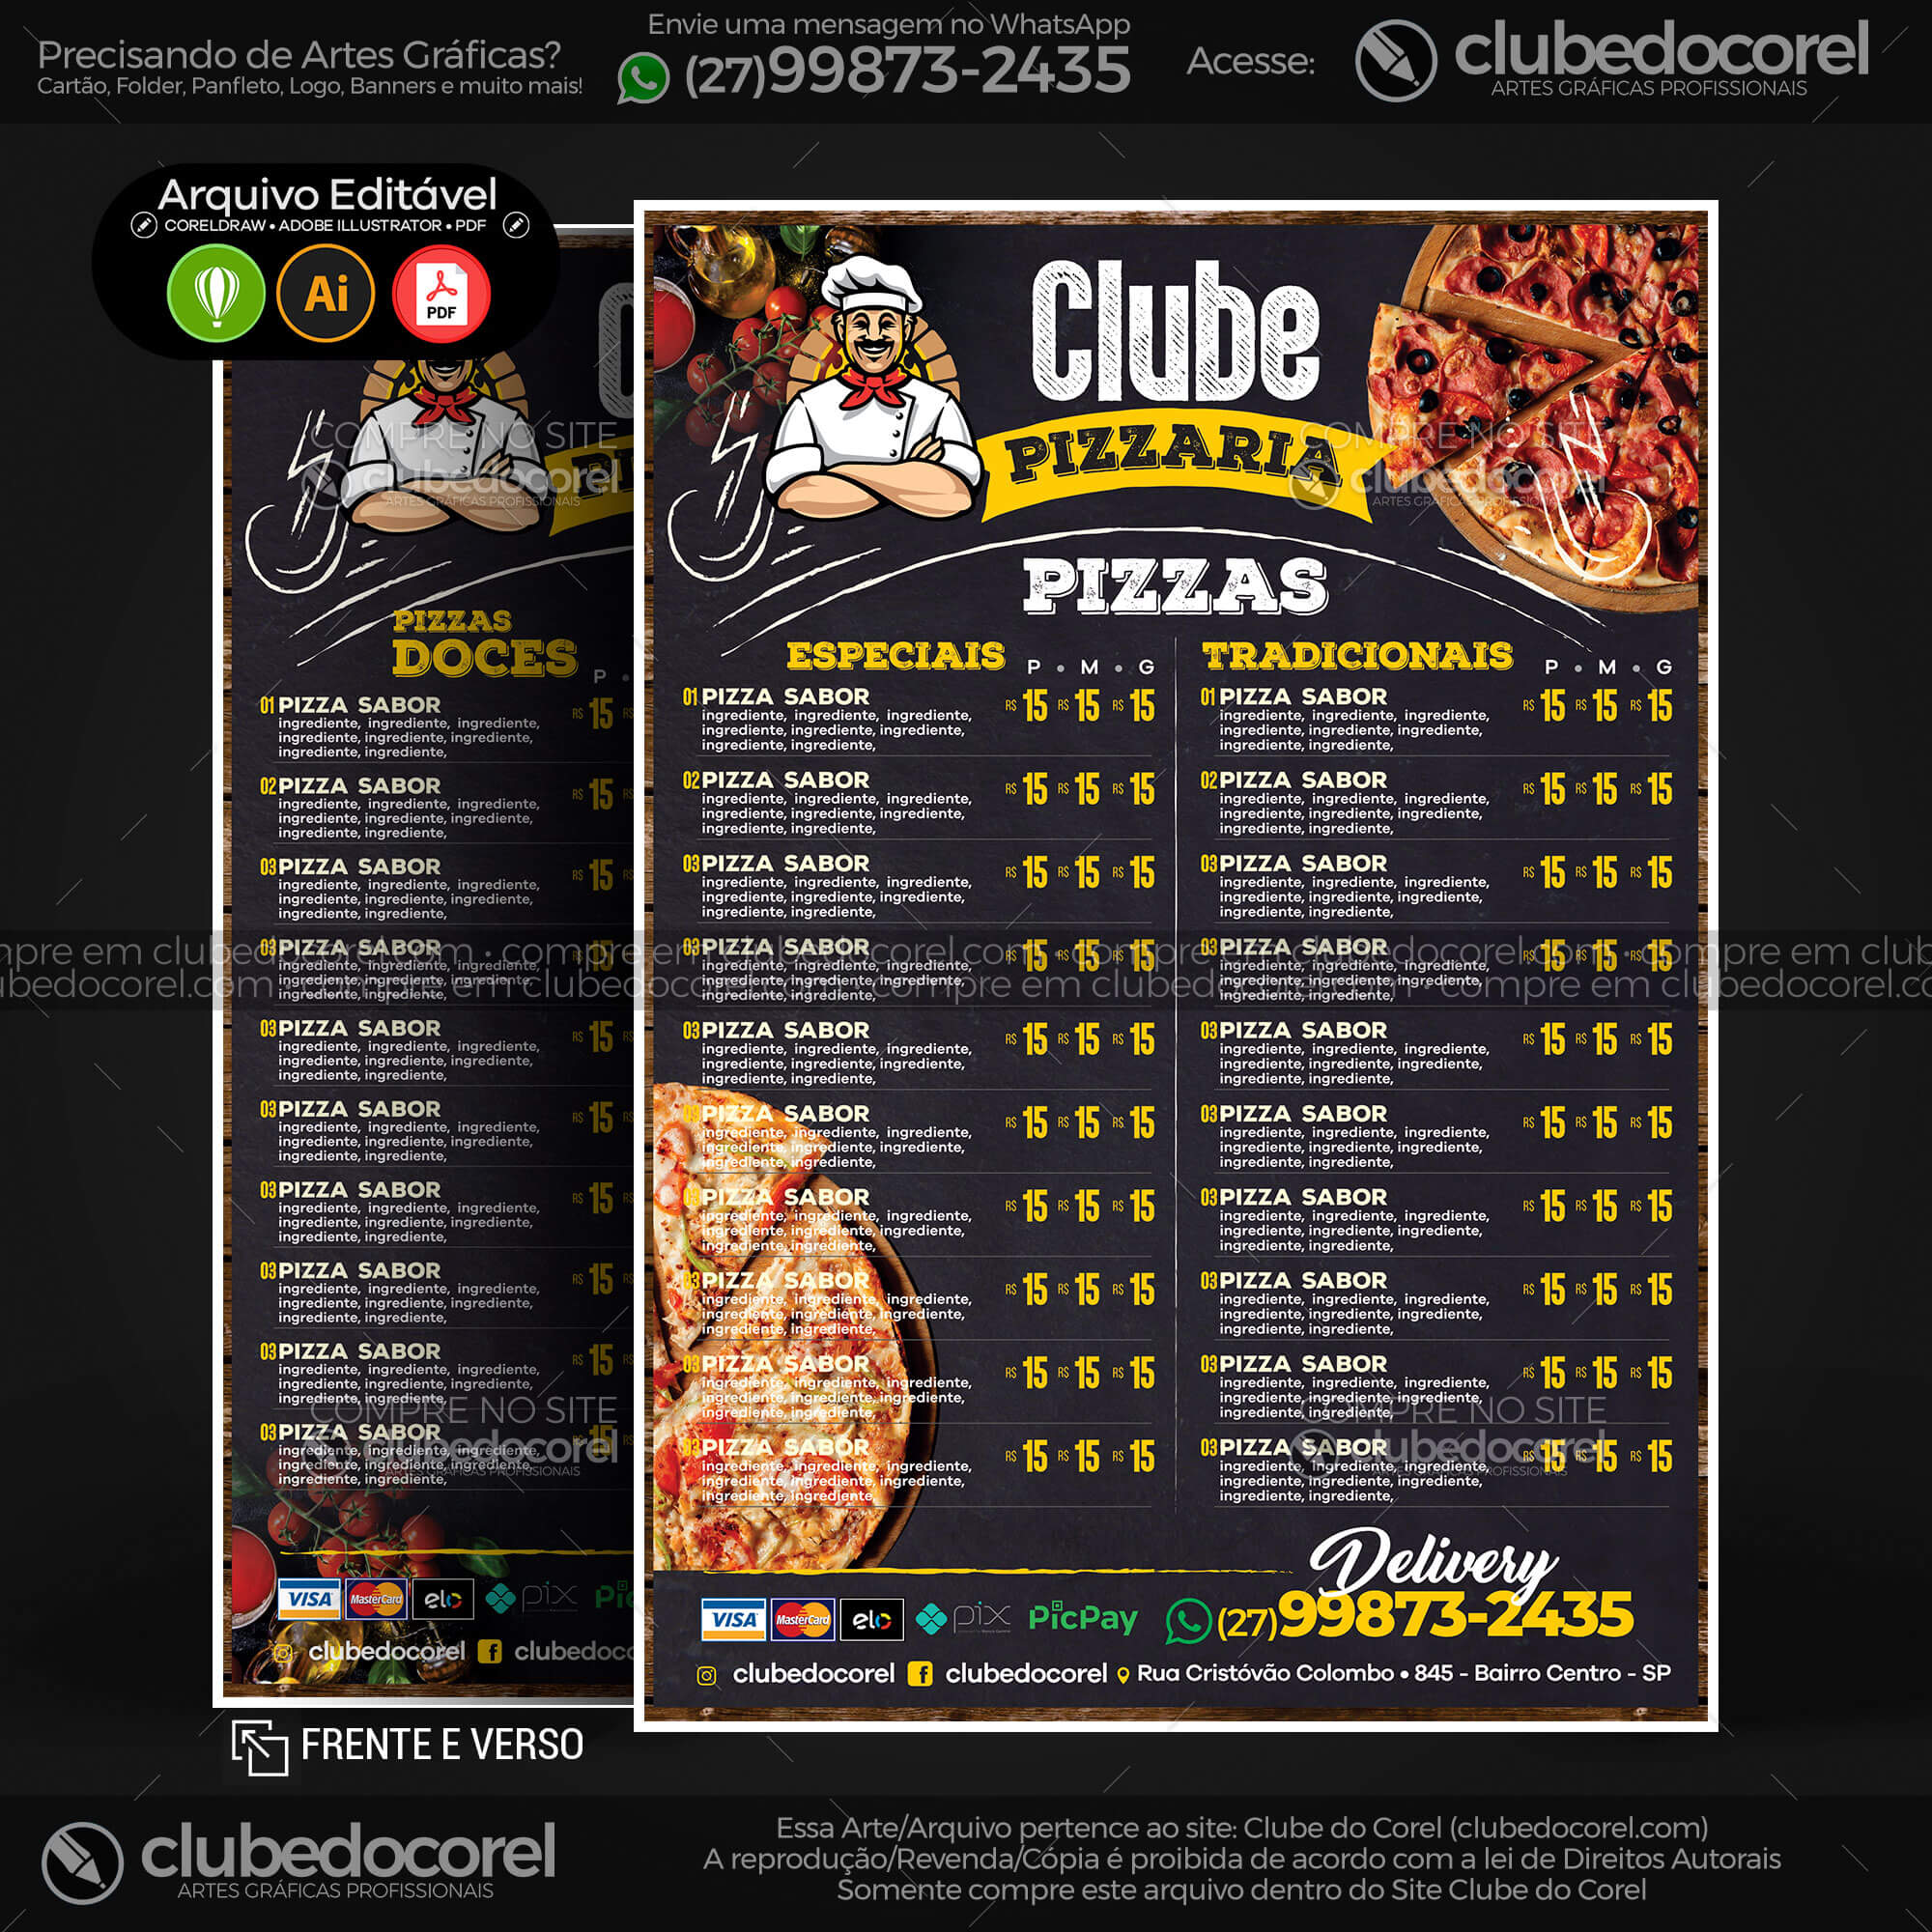 Cardápio Pizzaria - Pizza e Hamburguer (Lanche) - Modelo pronto Editável  #01 [CDR AI PDF] | Clube do Corel - modelo de cardapio